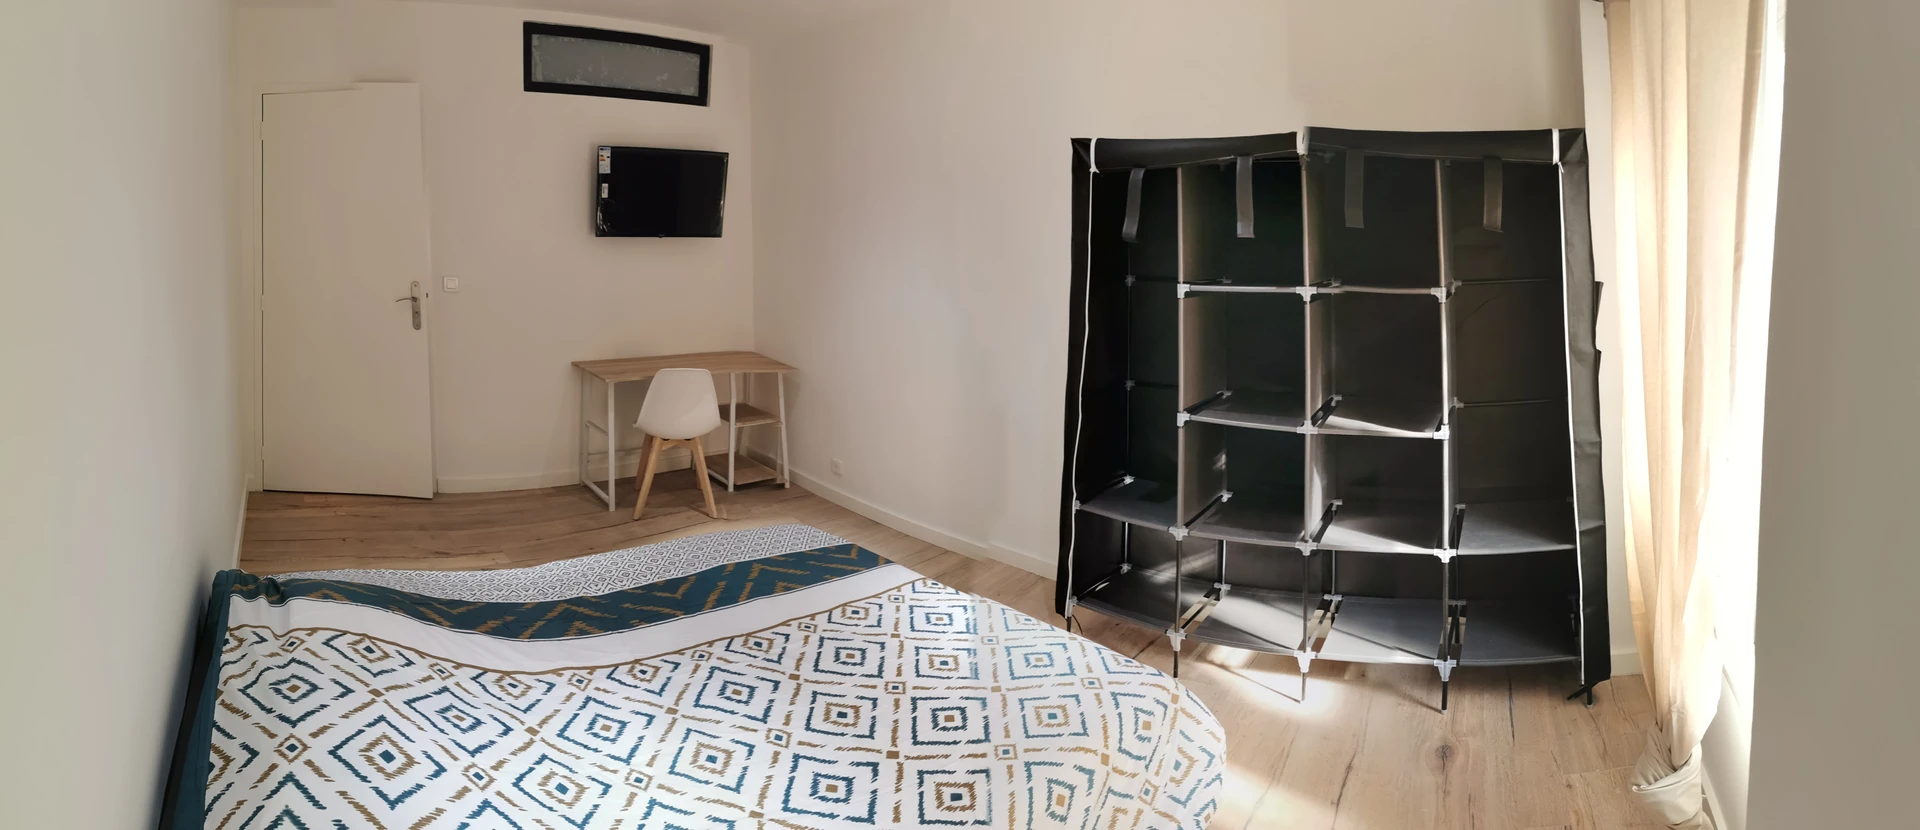 Alquiler de habitaciones por meses en Toulon